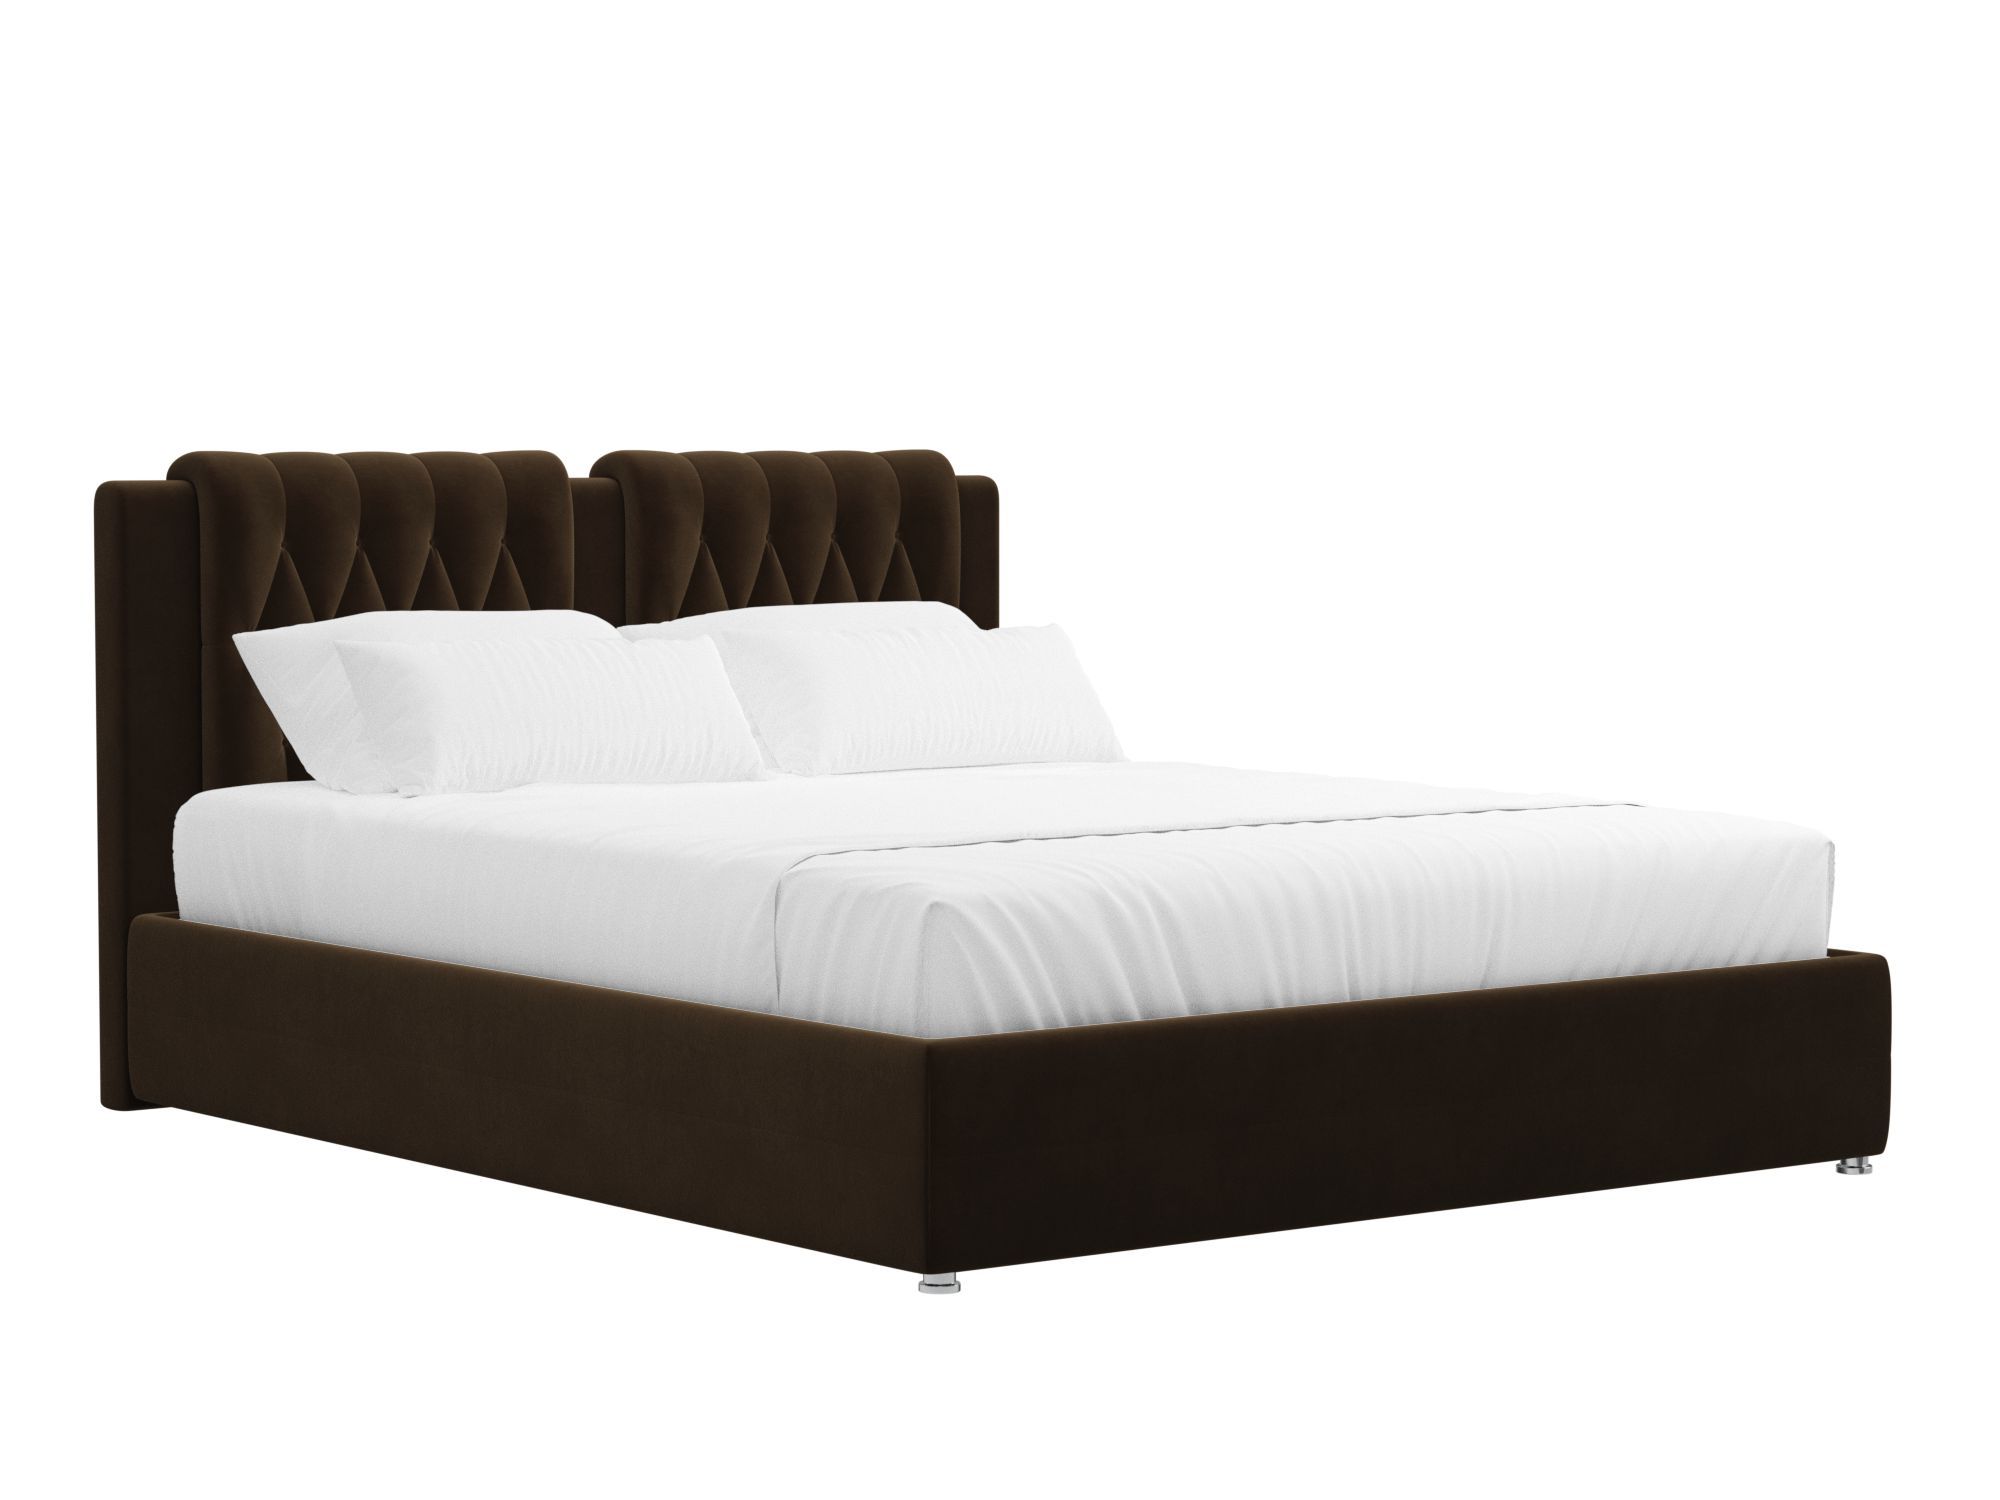 Кровать Камилла (160x200) Коричневый, ЛДСП интерьерная кровать артмебель камилла микровельвет бежево коричневый